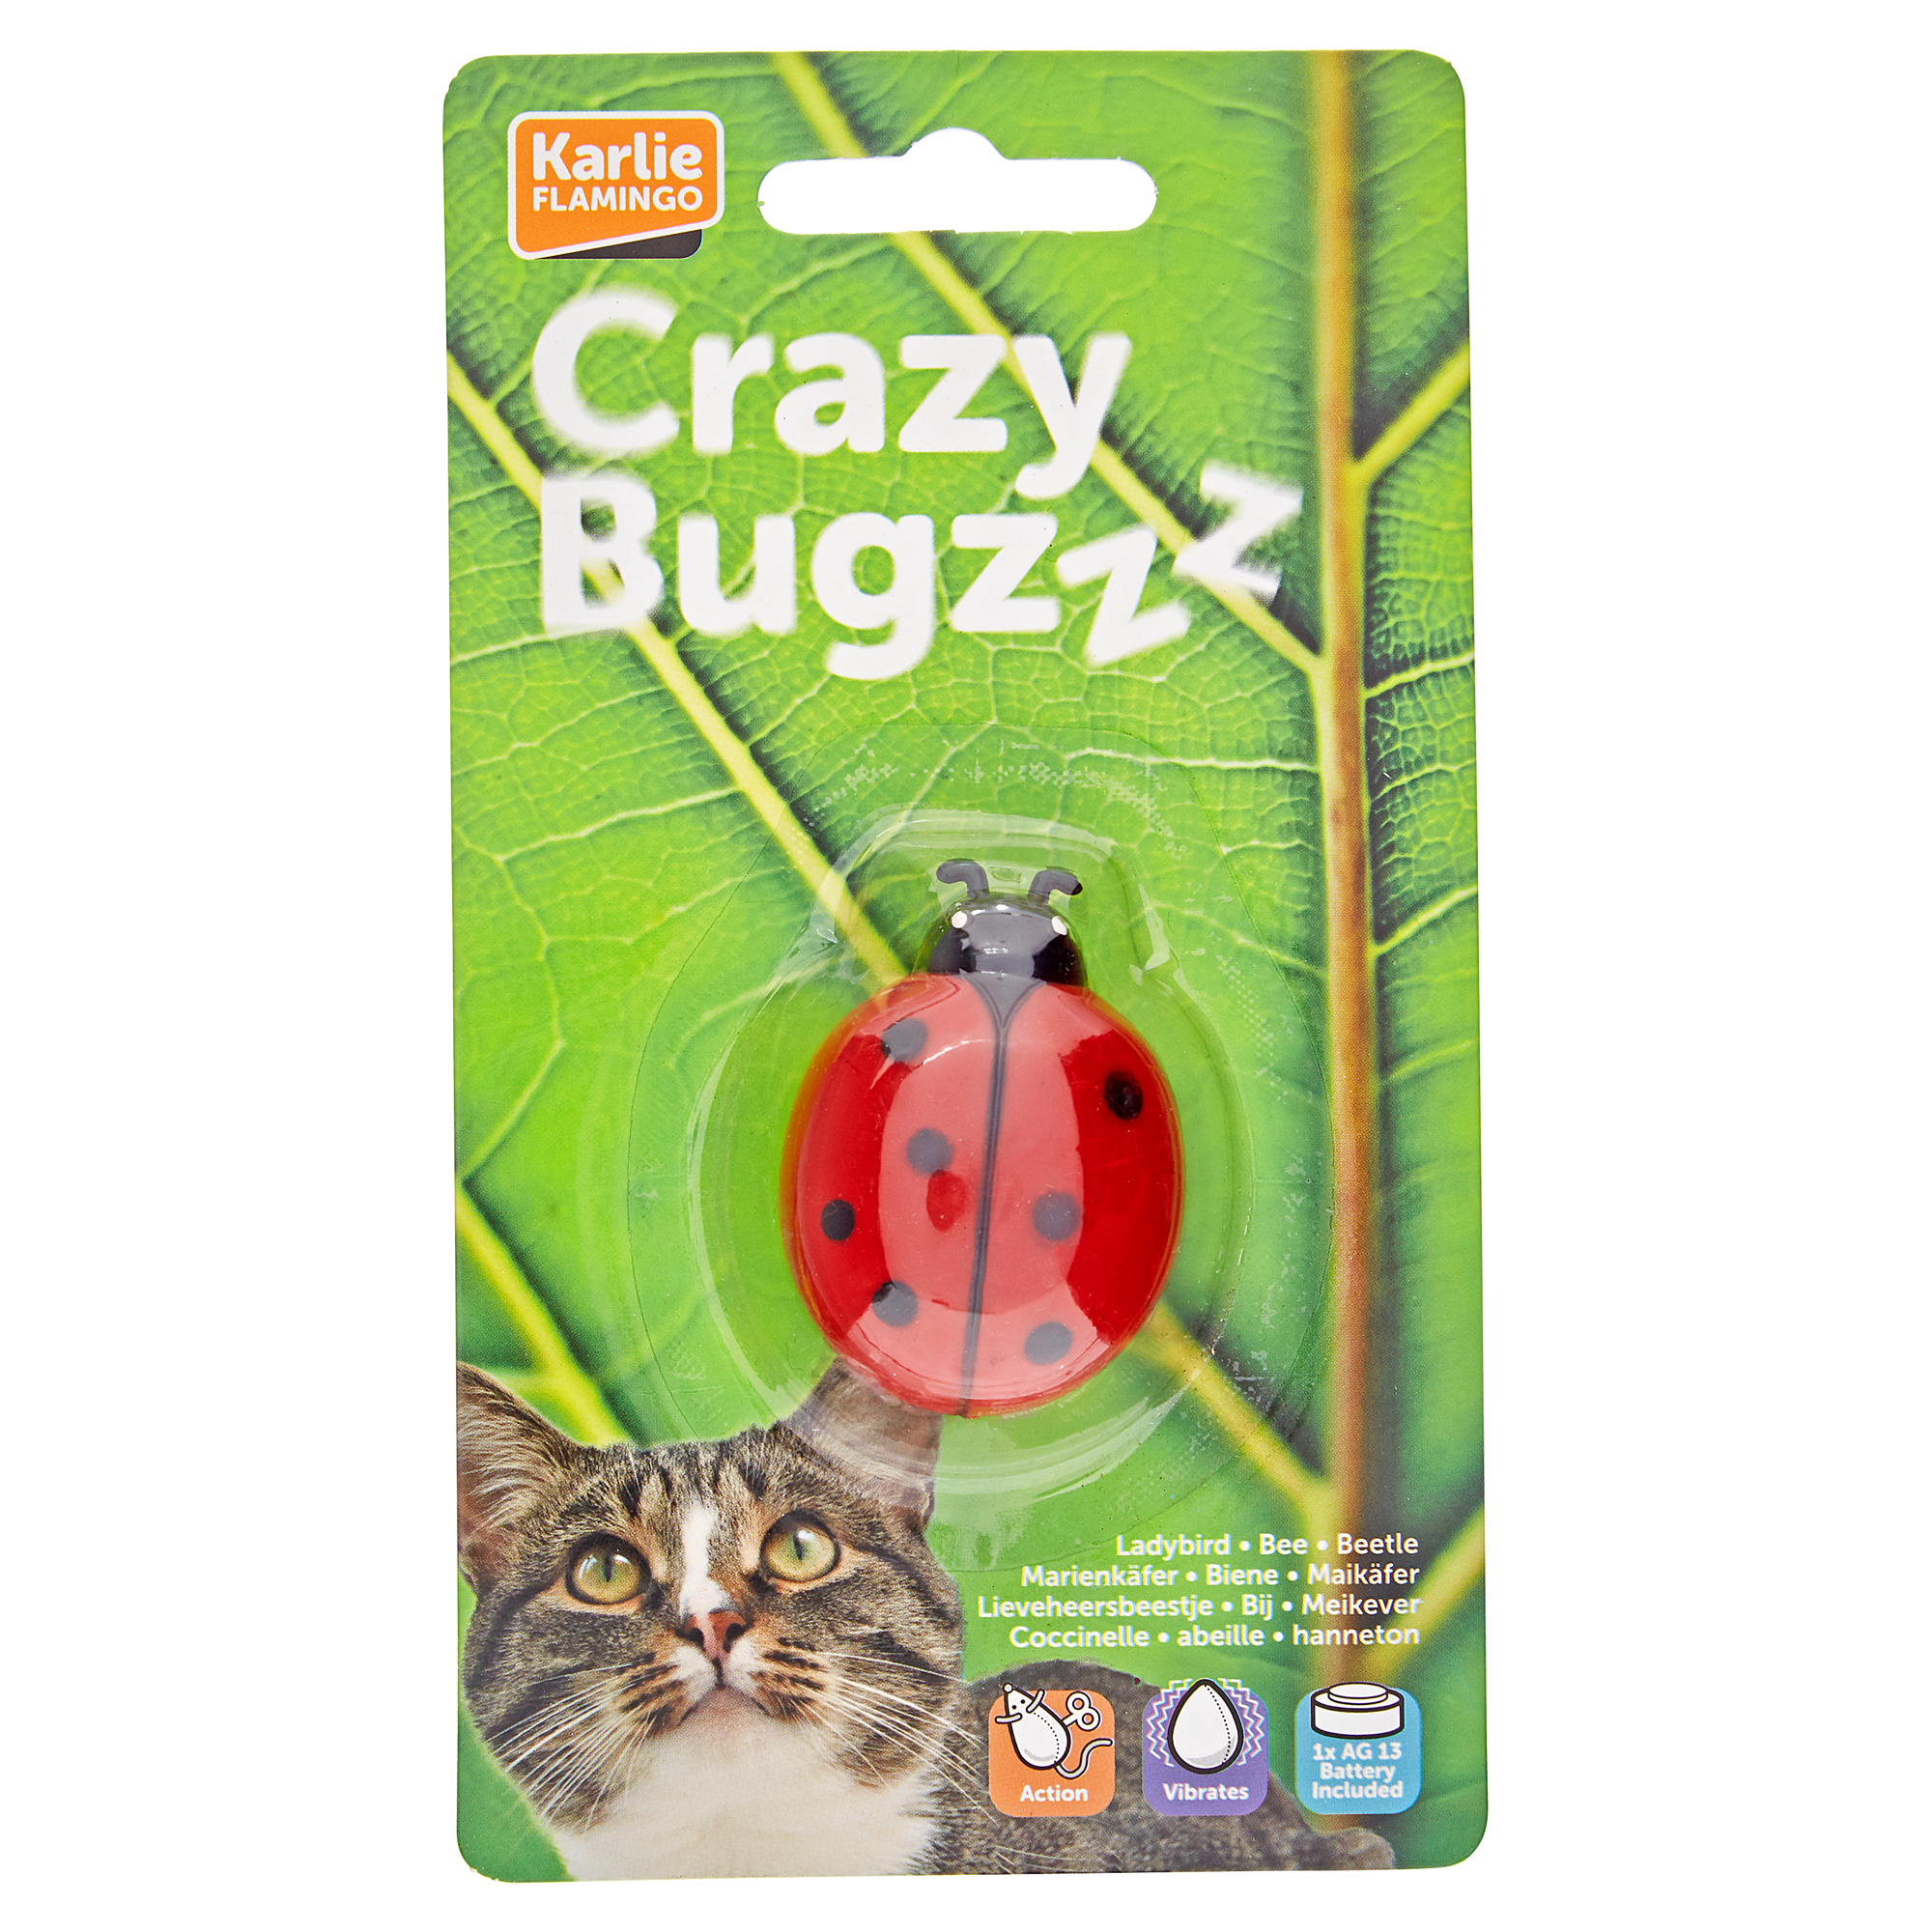 Katzenspielzeug "Crazy Bug" 5 x 4 x 2 cm + product picture